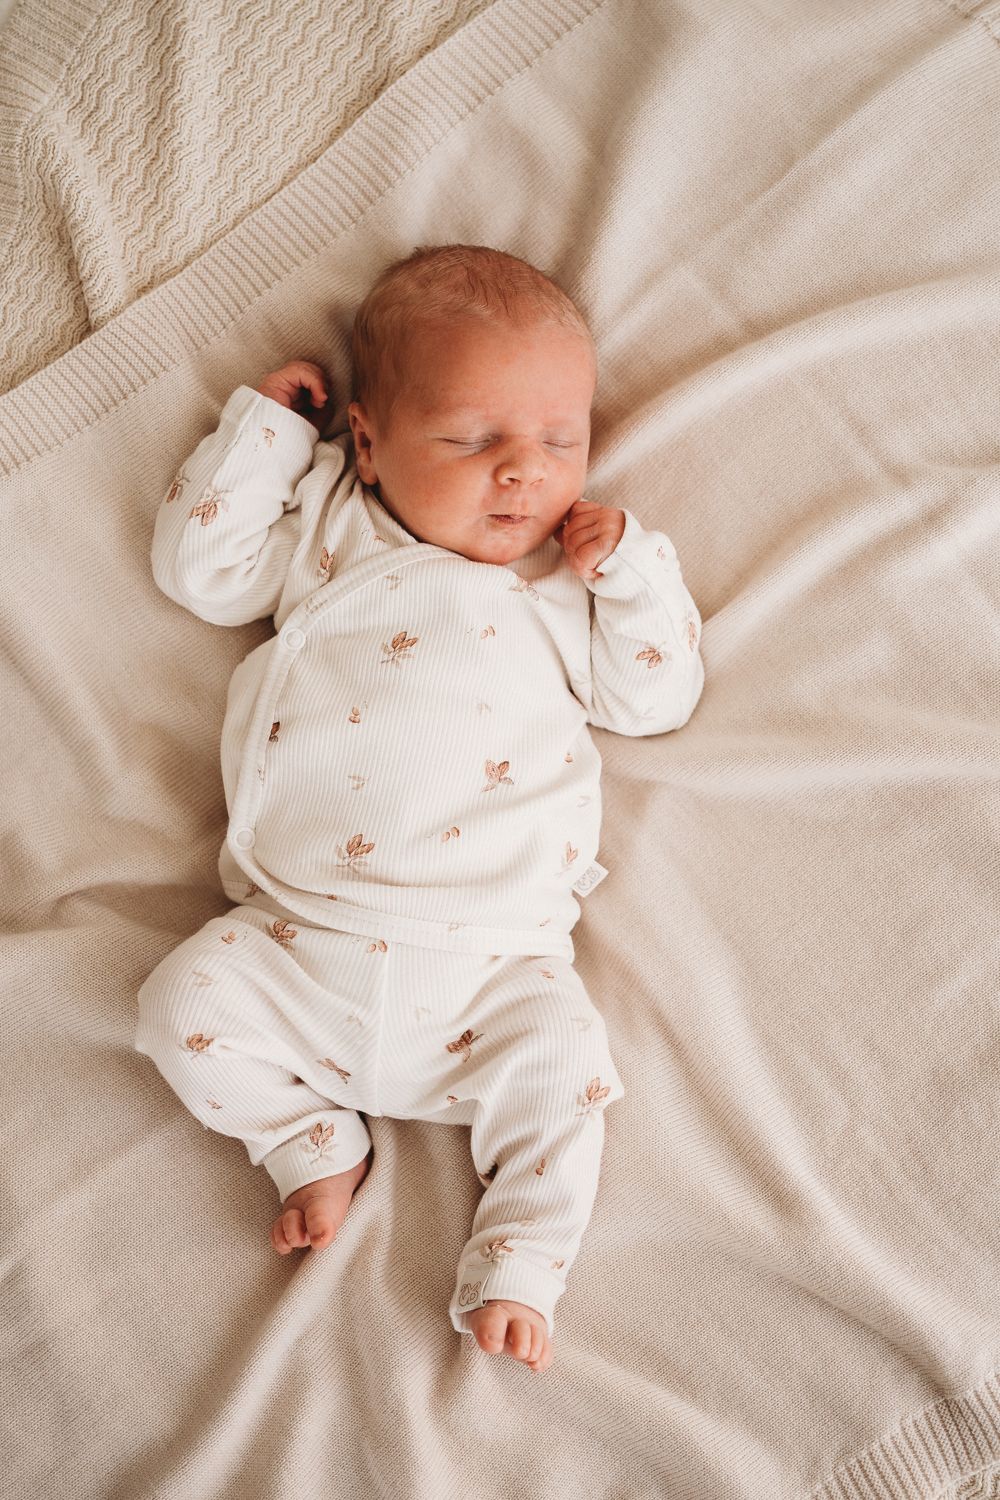 Een vredige pasgeboren baby, gekleed in een witte outfit van OEKO TEX-katoen met kleine printjes, heerlijk slapend op een beige deken met textuur.